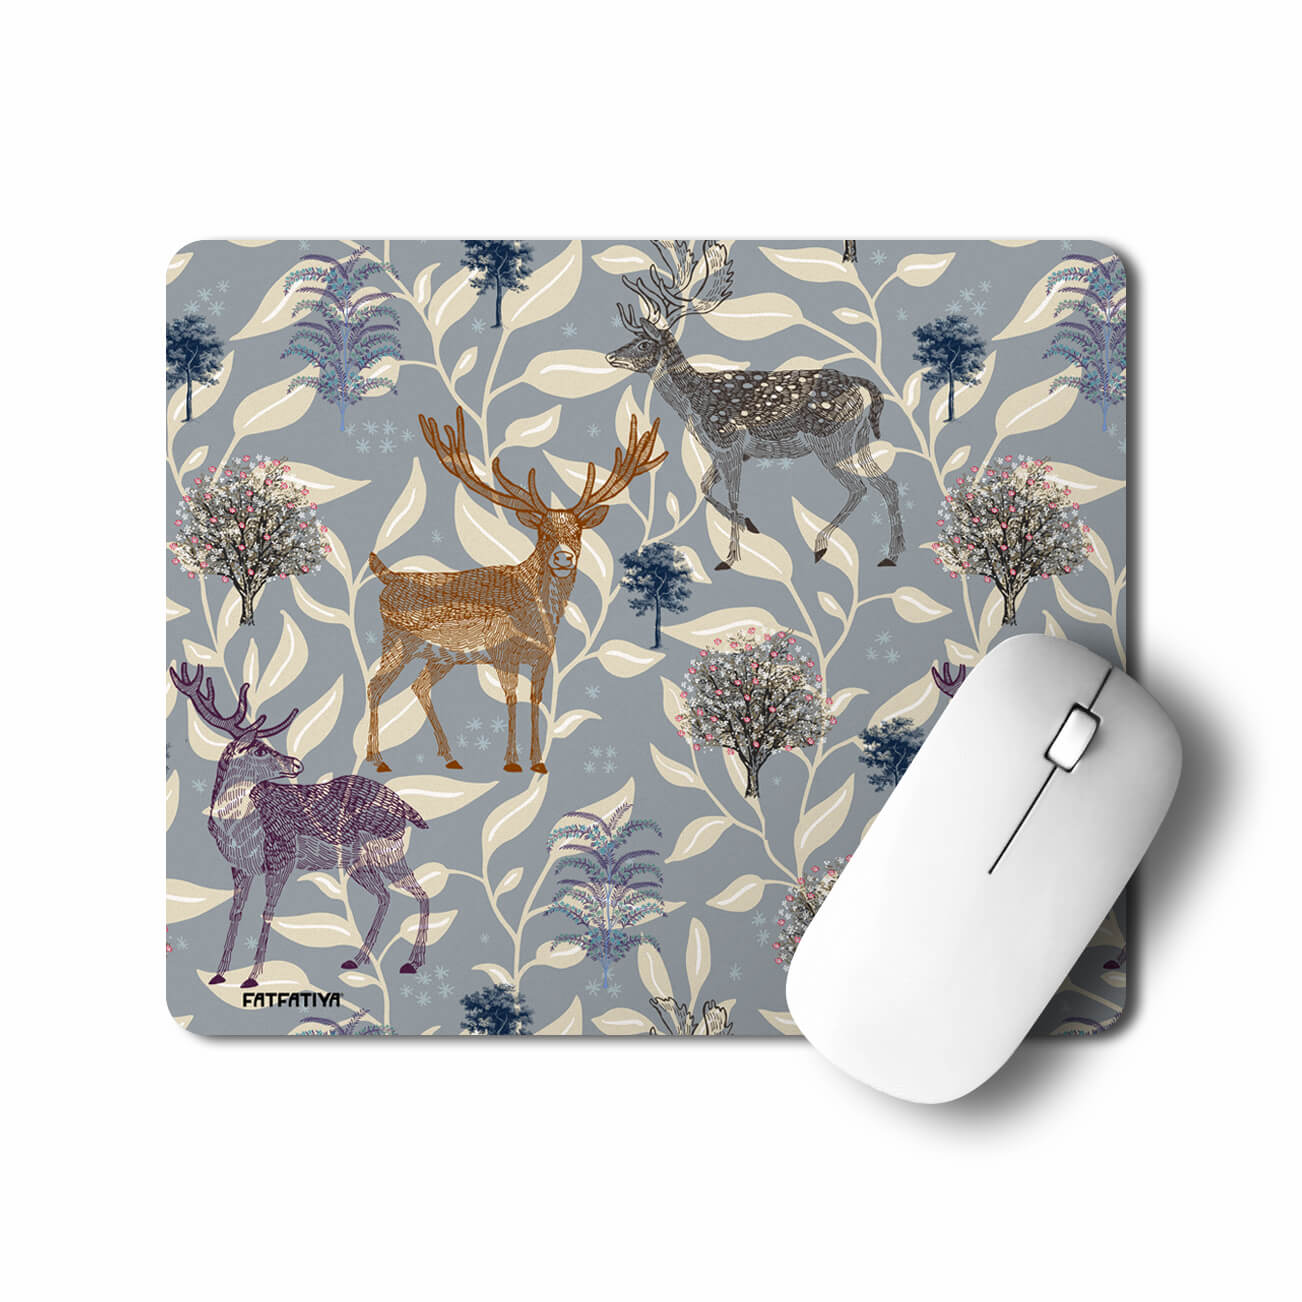 Beautiful Printed Deer Motif Table Mouse Pad